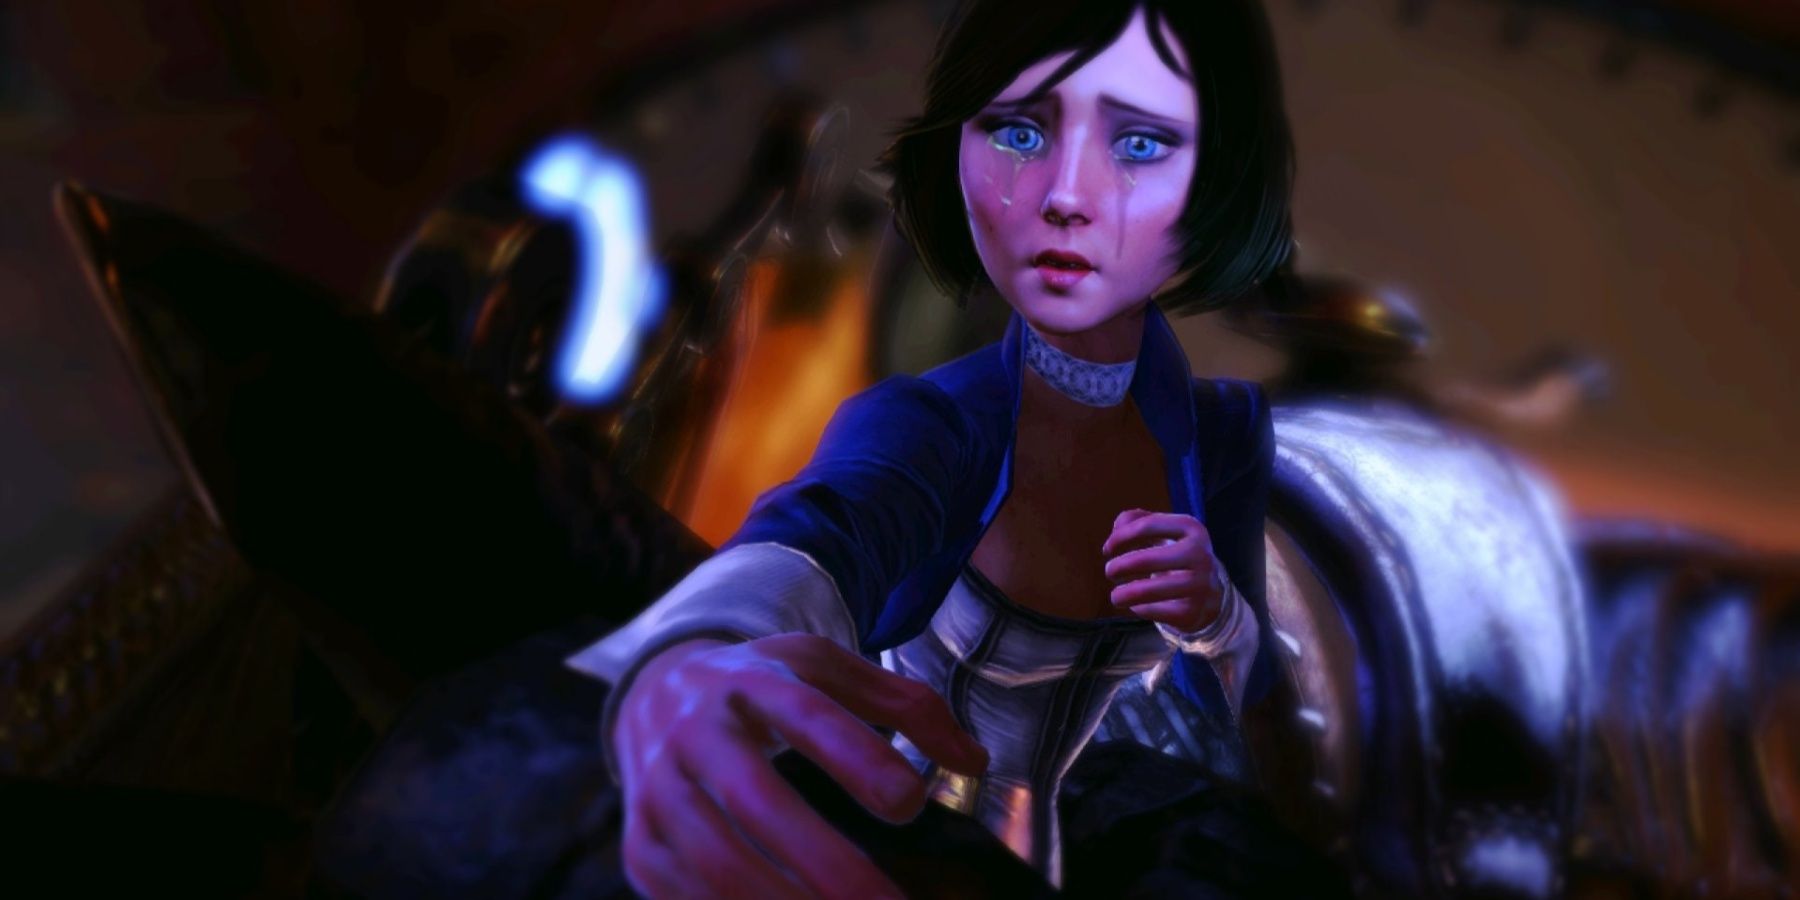 Uma mulher chorando, Elizabeth de Bioshock Infinite, inclinada em direção à câmera